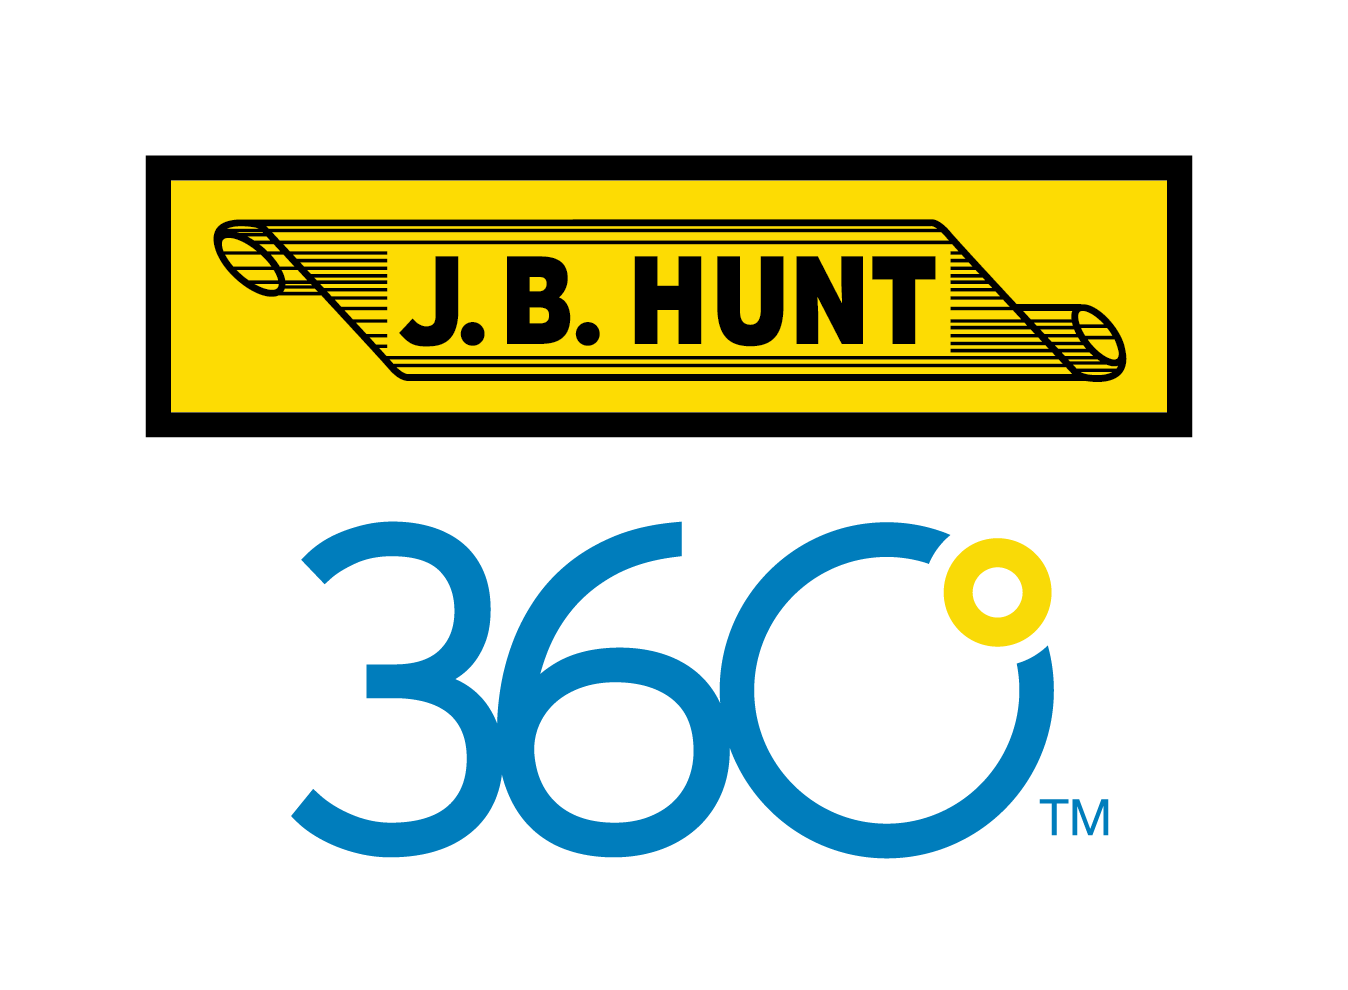 J.B. Hunt 360